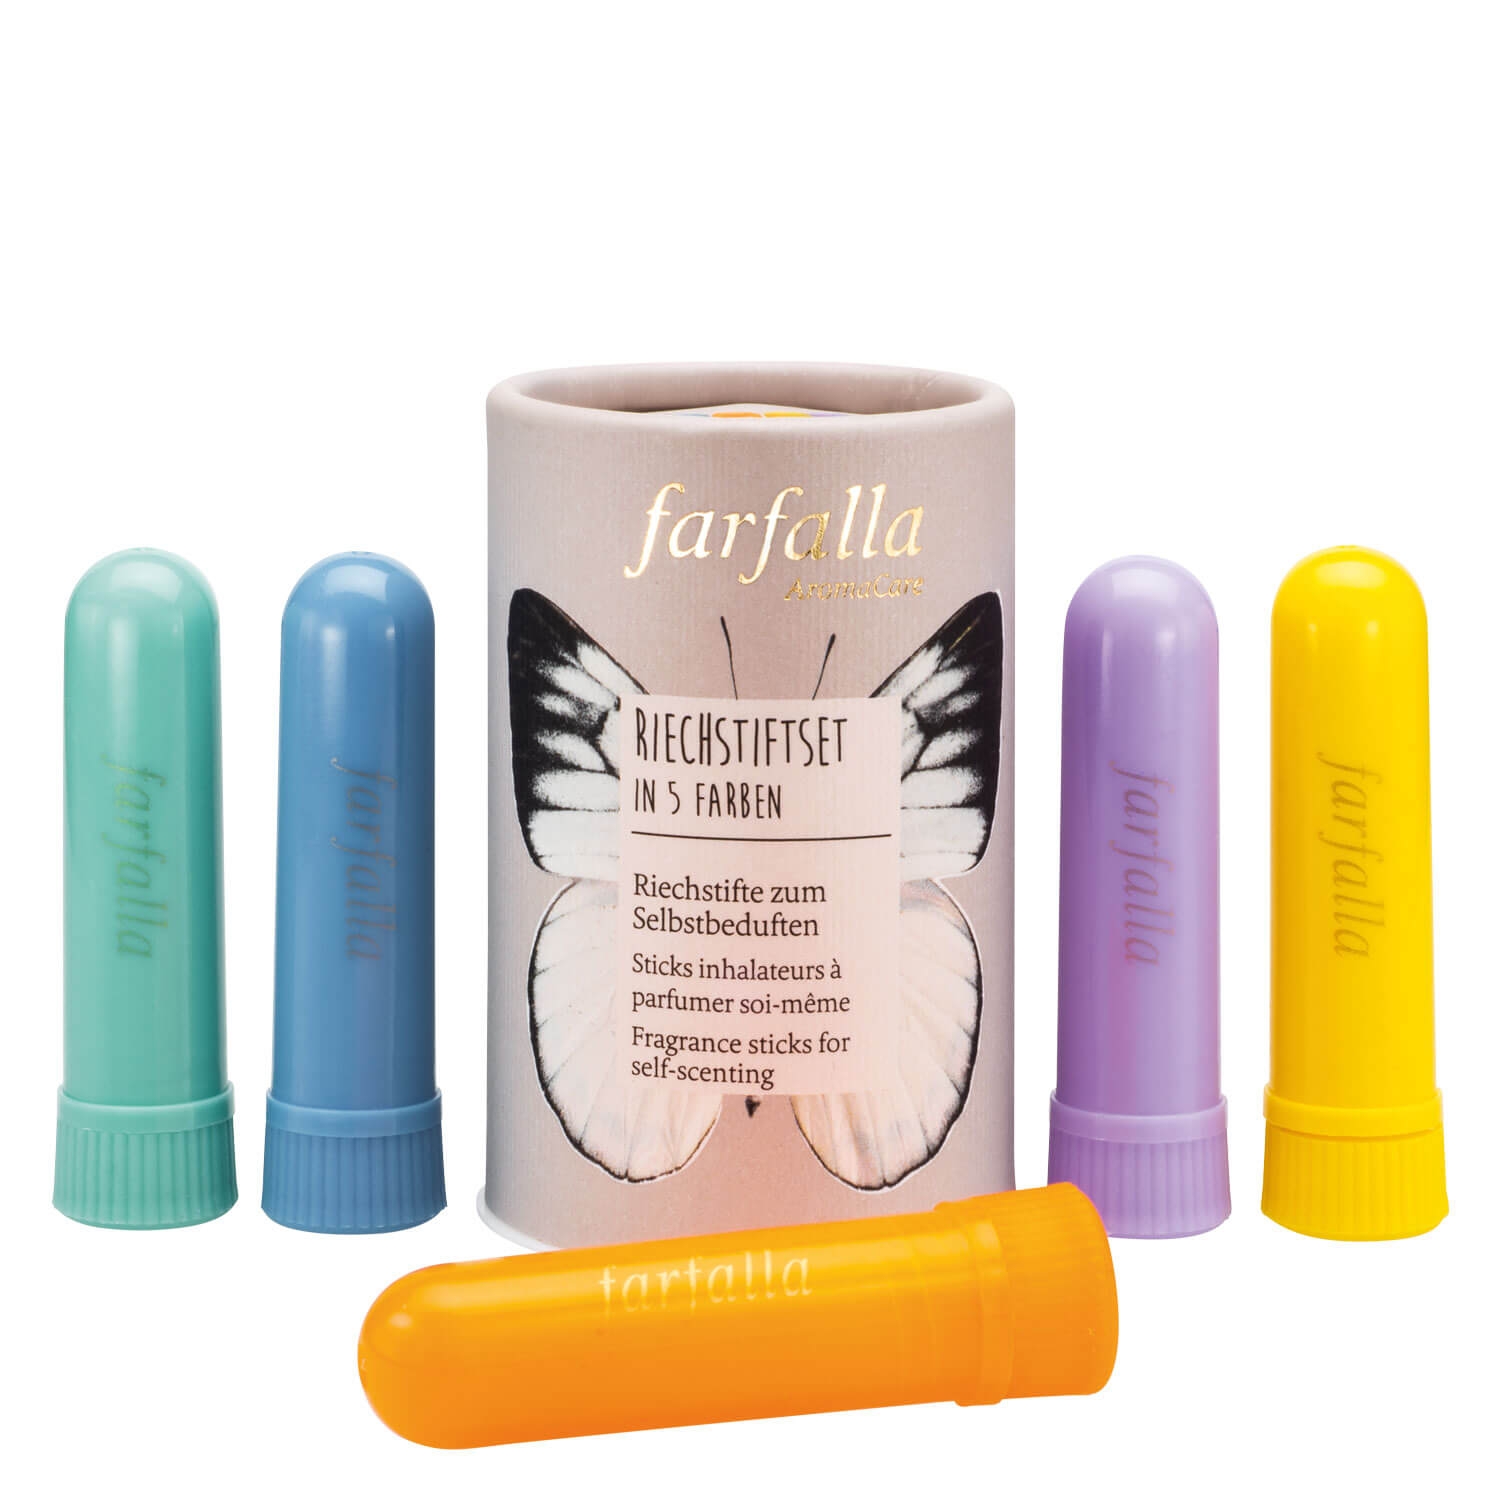 Produktbild von Farfalla Tools - Riechstiftset in 5 Farben